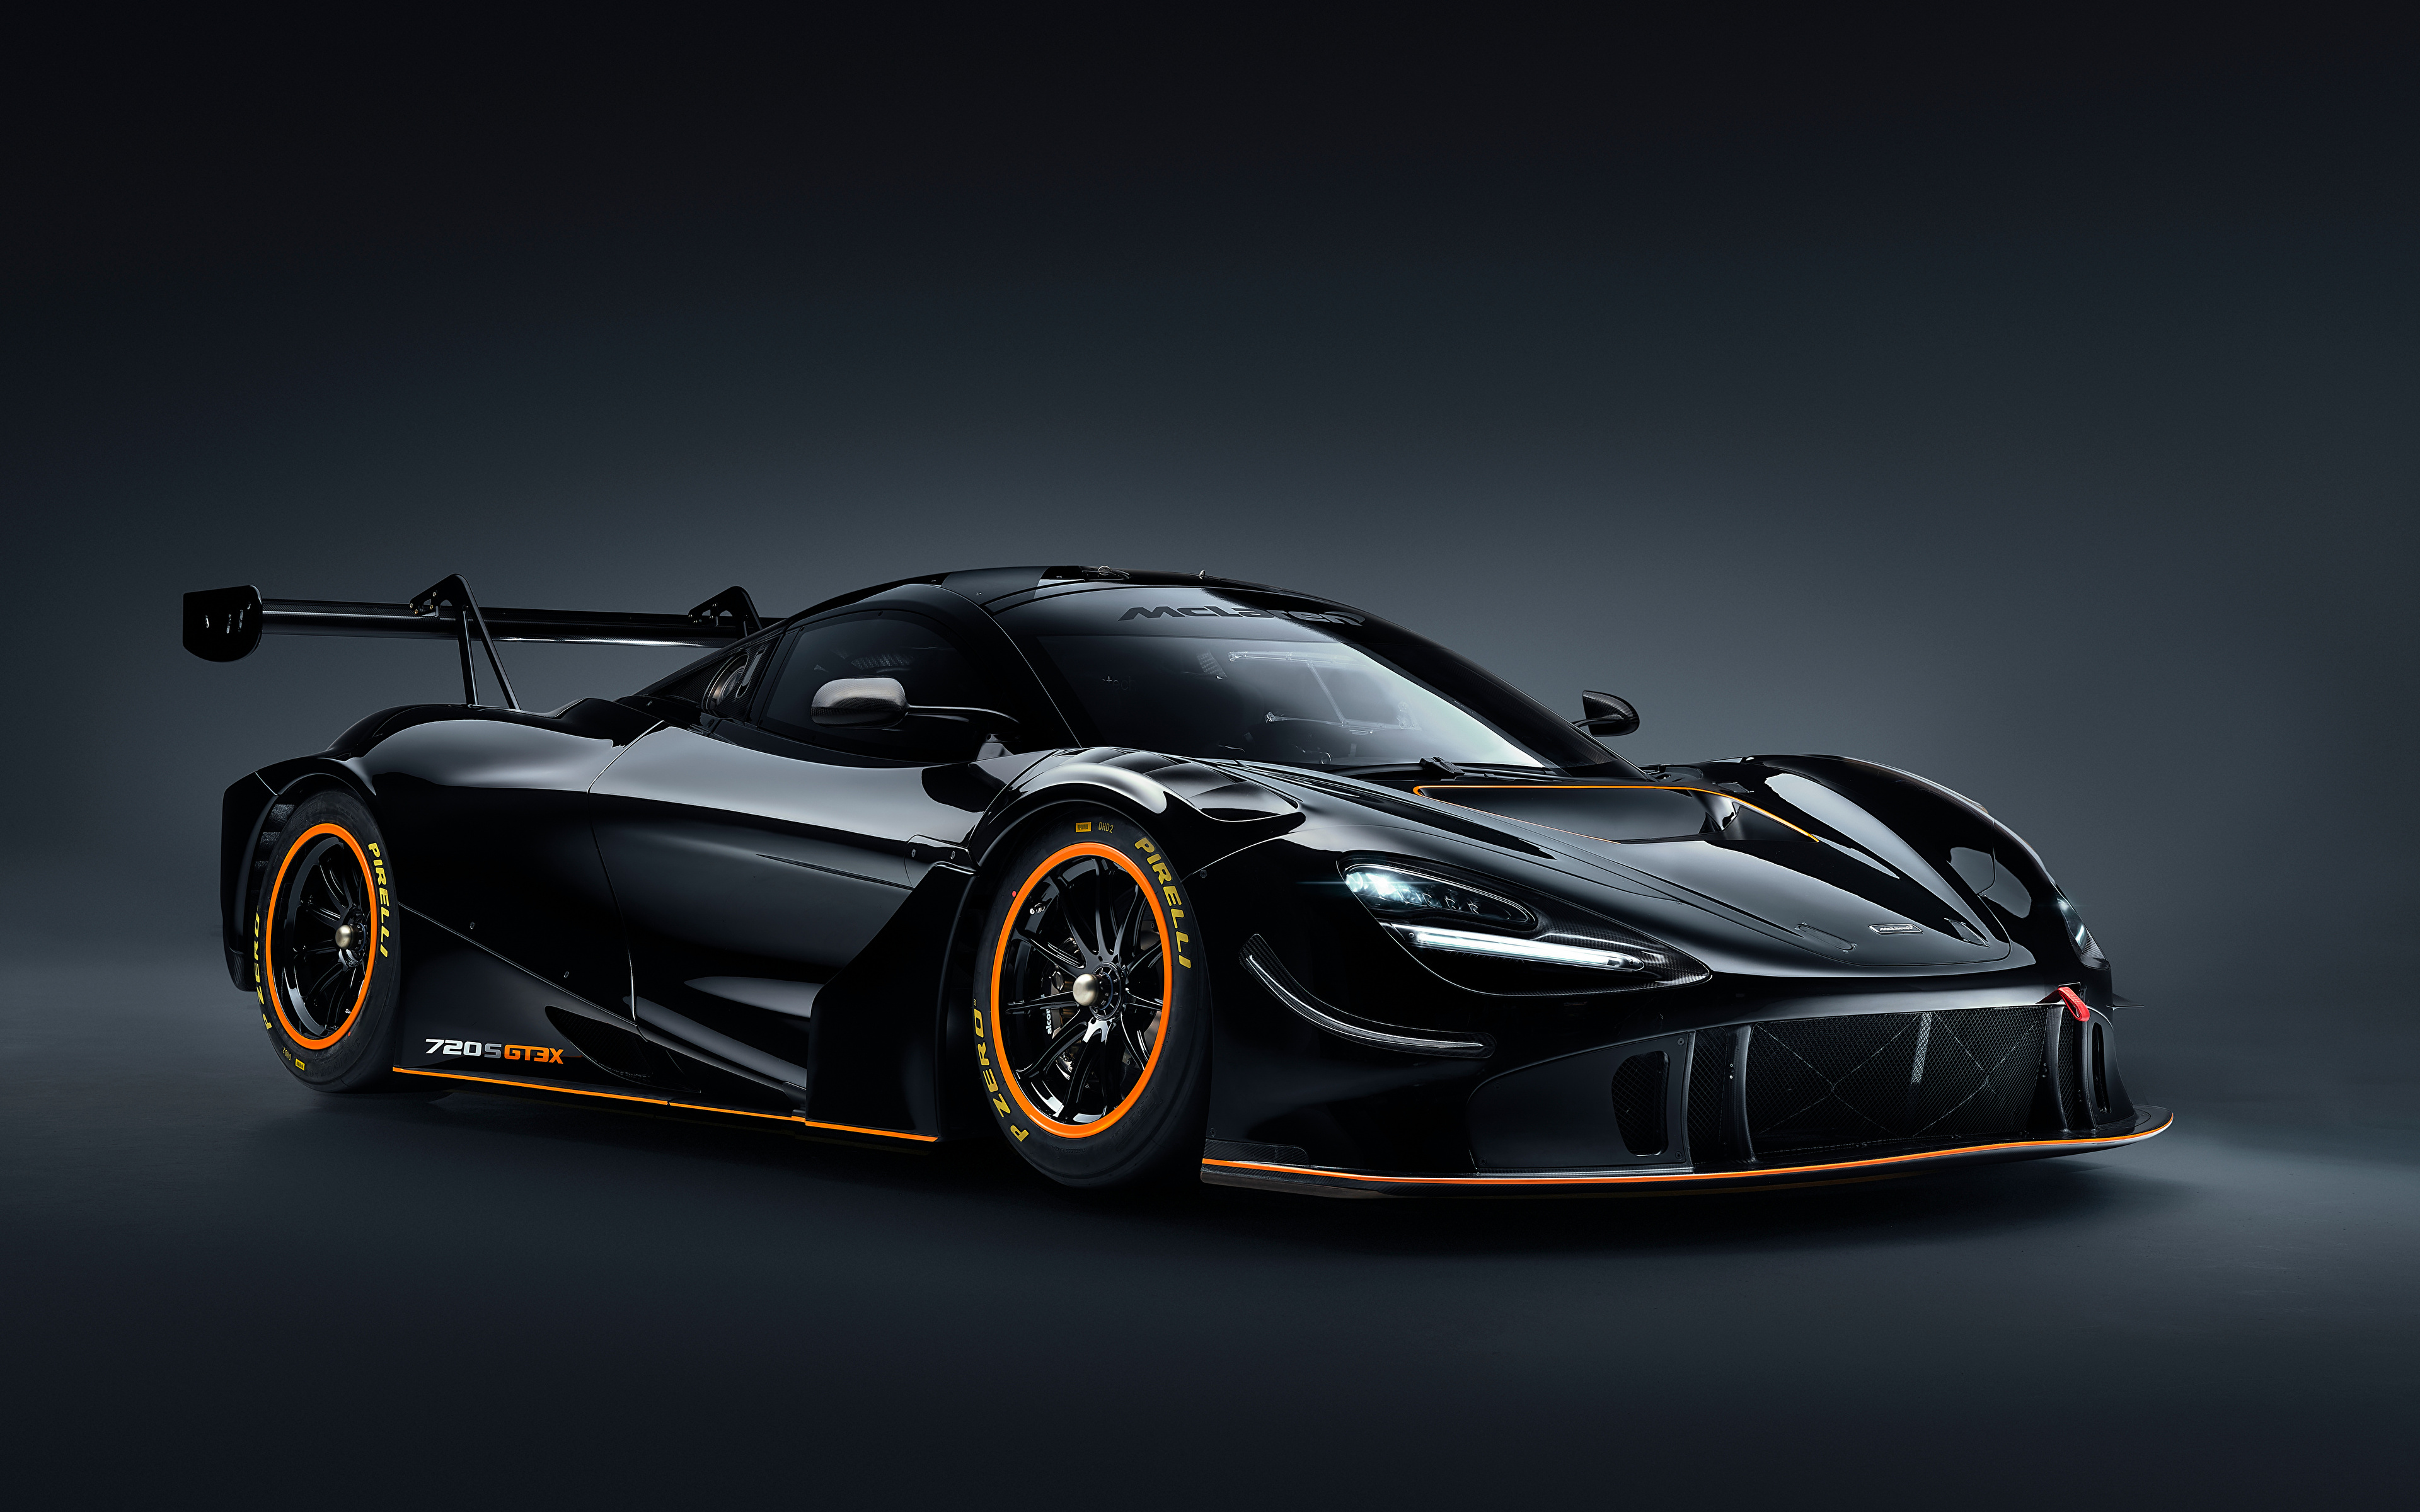 Immagine McLaren 720S GT3X, 2021 Nero macchine metallico 3840x2400 Auto macchina automobile autovettura Metallizzato